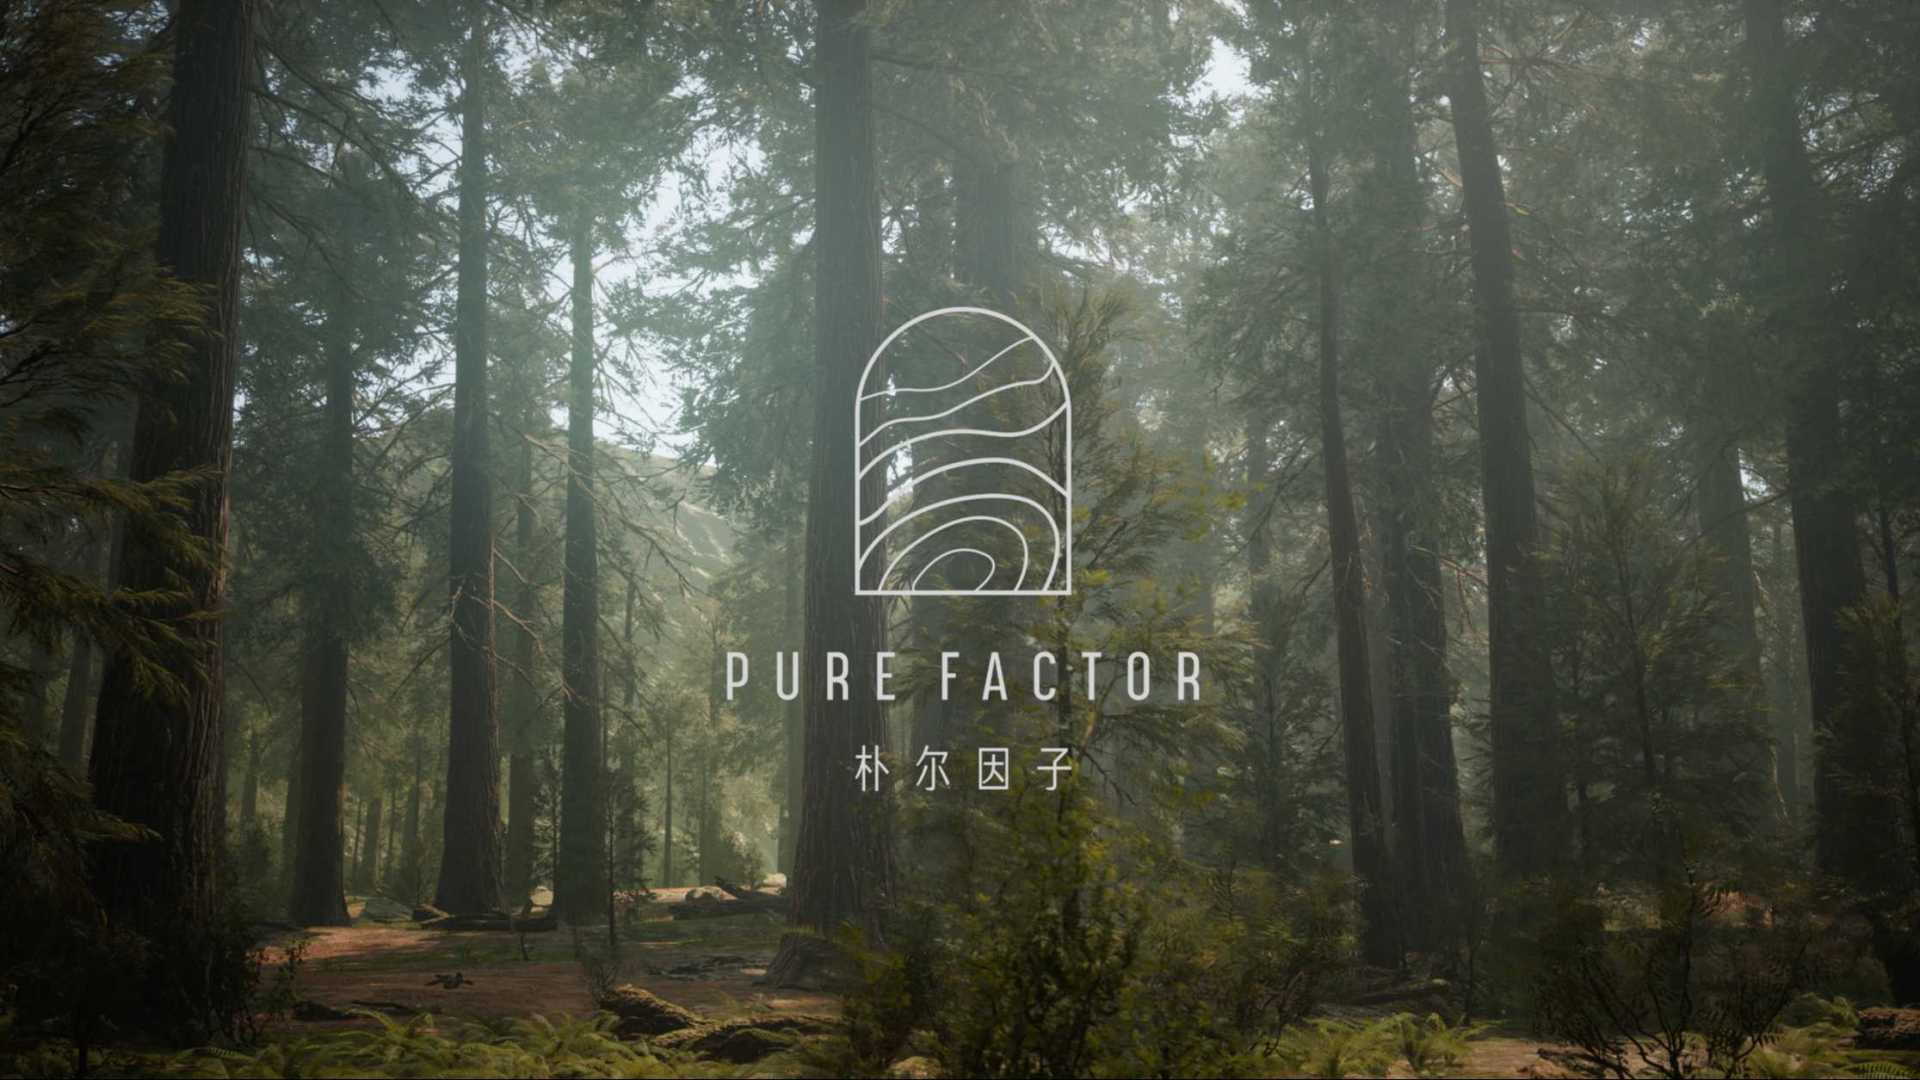 朴尔因子Pure Factor品牌形象概念片